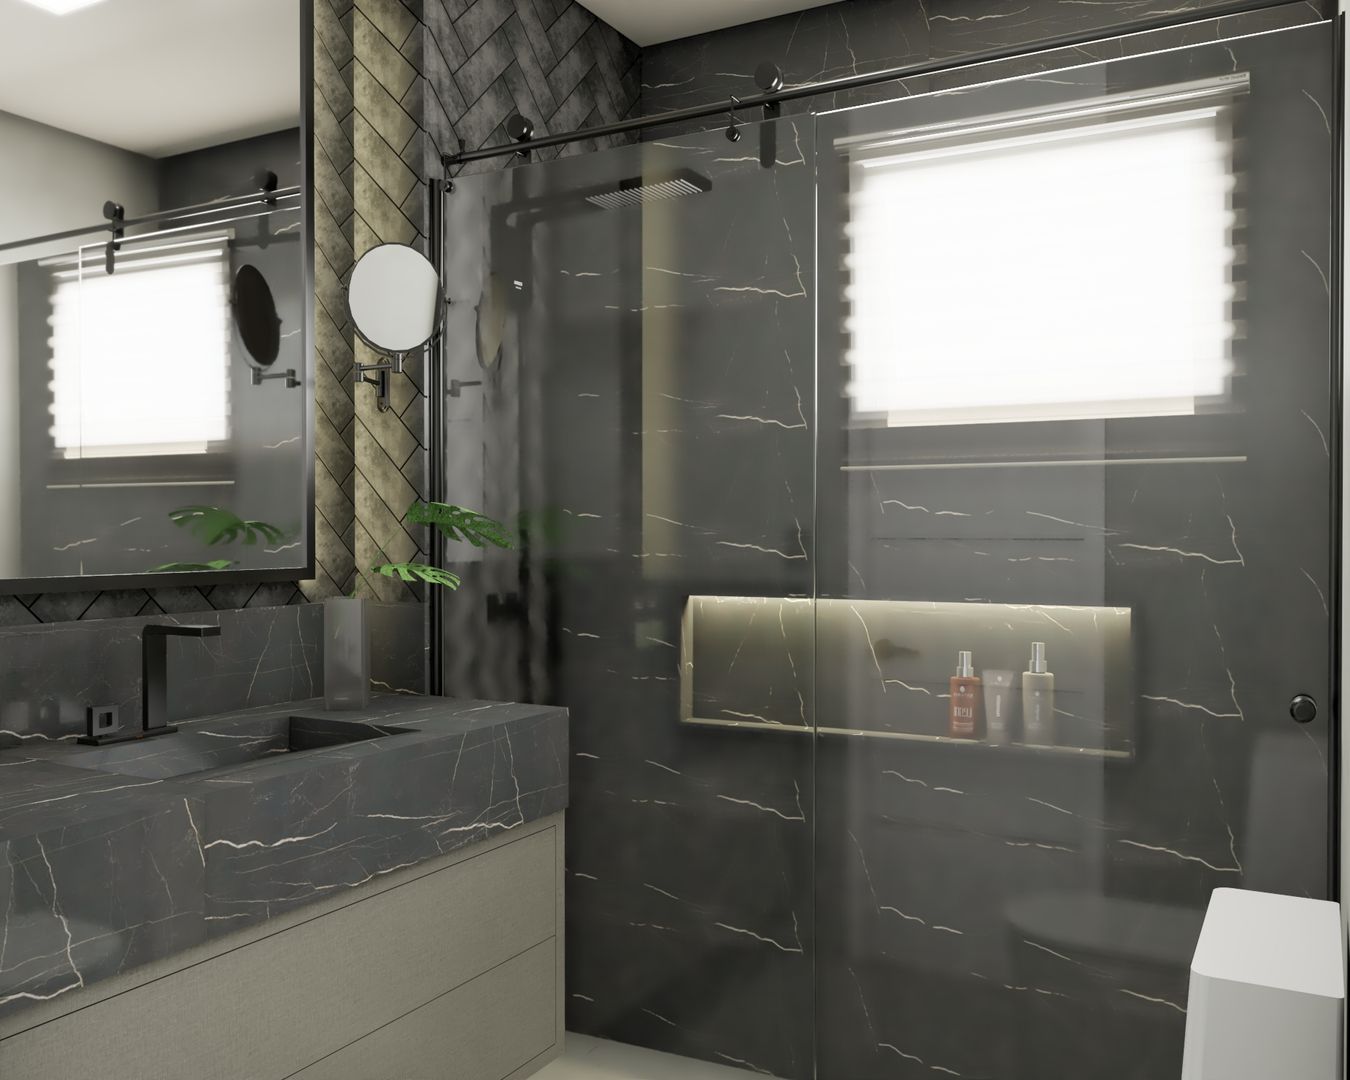 Banheiro|DR AJP ARQUITETOS ASSOCIADOS Banheiros modernos Mármore nichos,iluminação embutida,box,praticidade,funcionalidade.,Acessórios